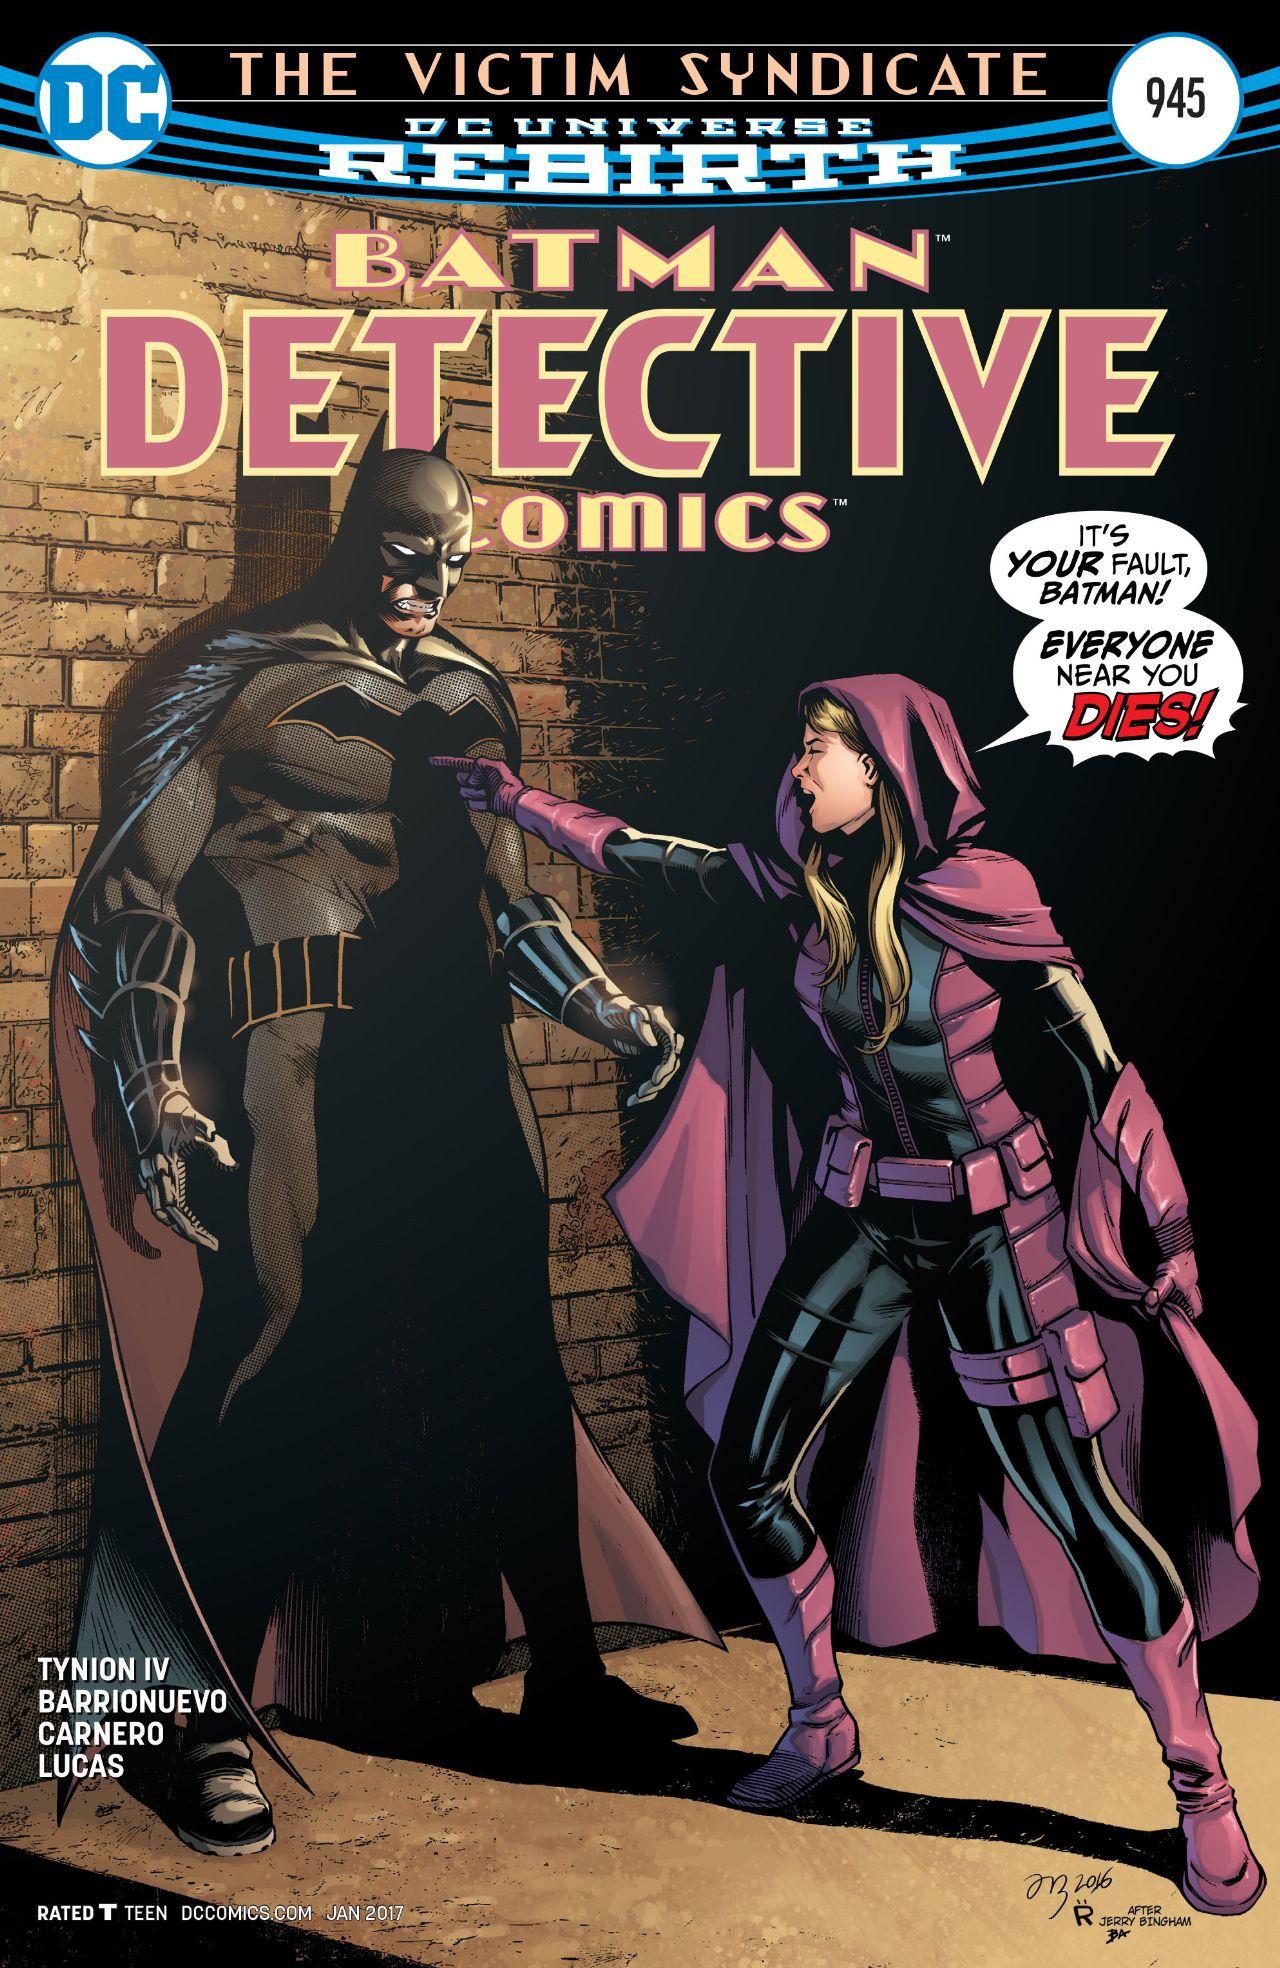 Detective Comics Vol. 1 #945